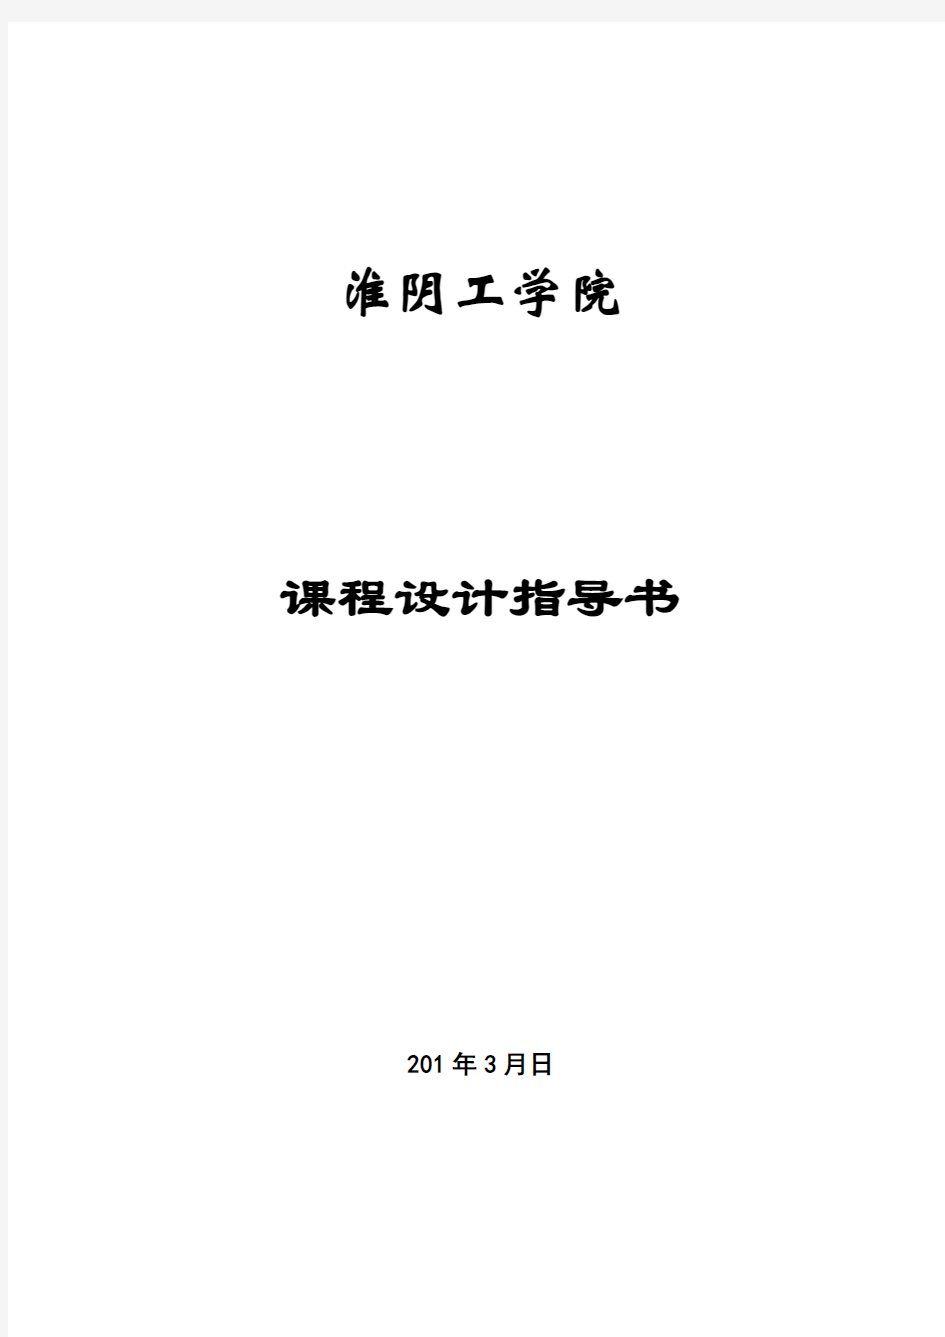 大型数据库课程设计指南淮阴工学院计算机工程实验中心首页